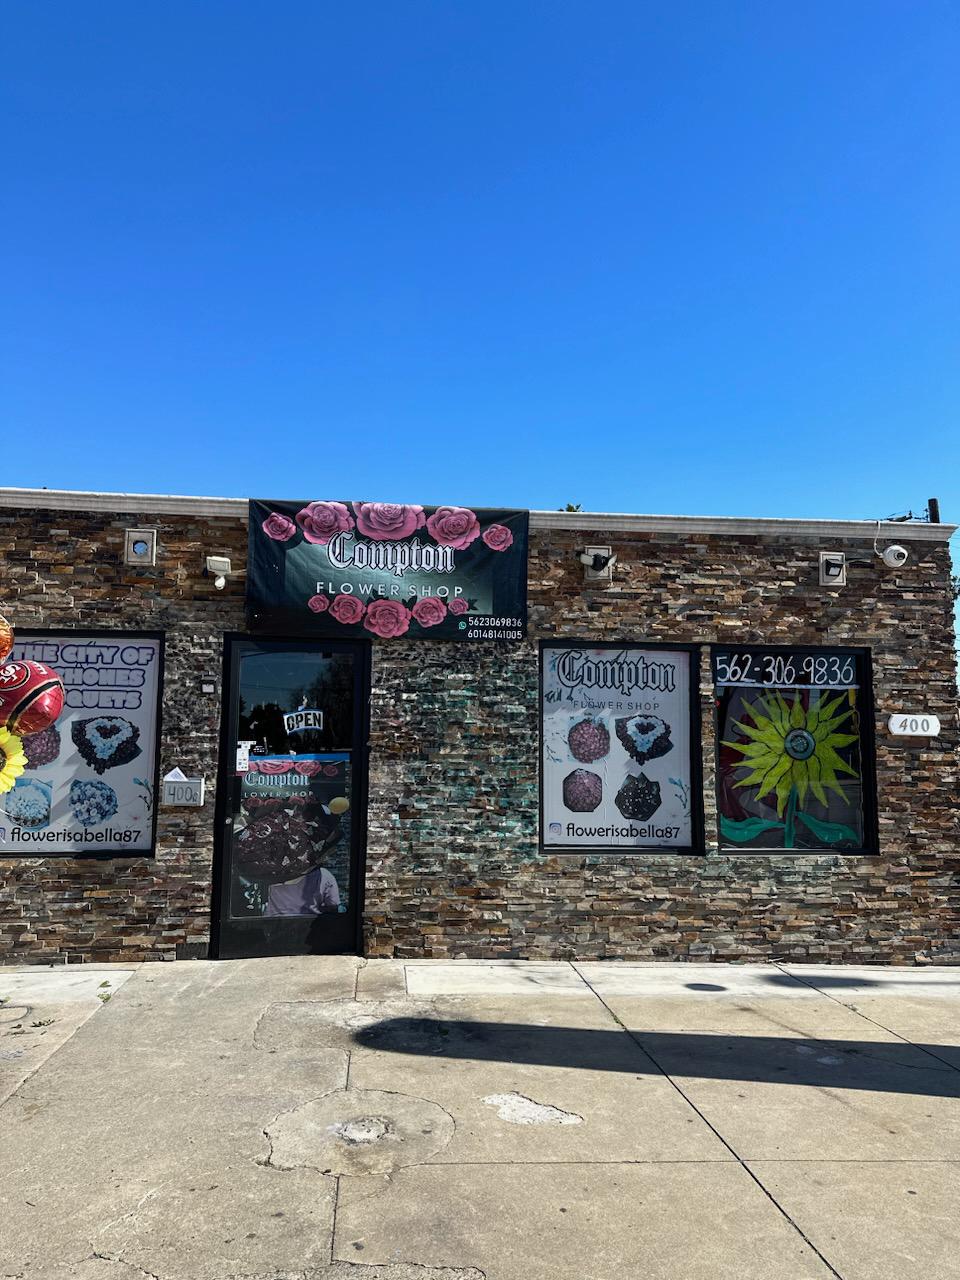 Compton Flower Shop - Flower shop